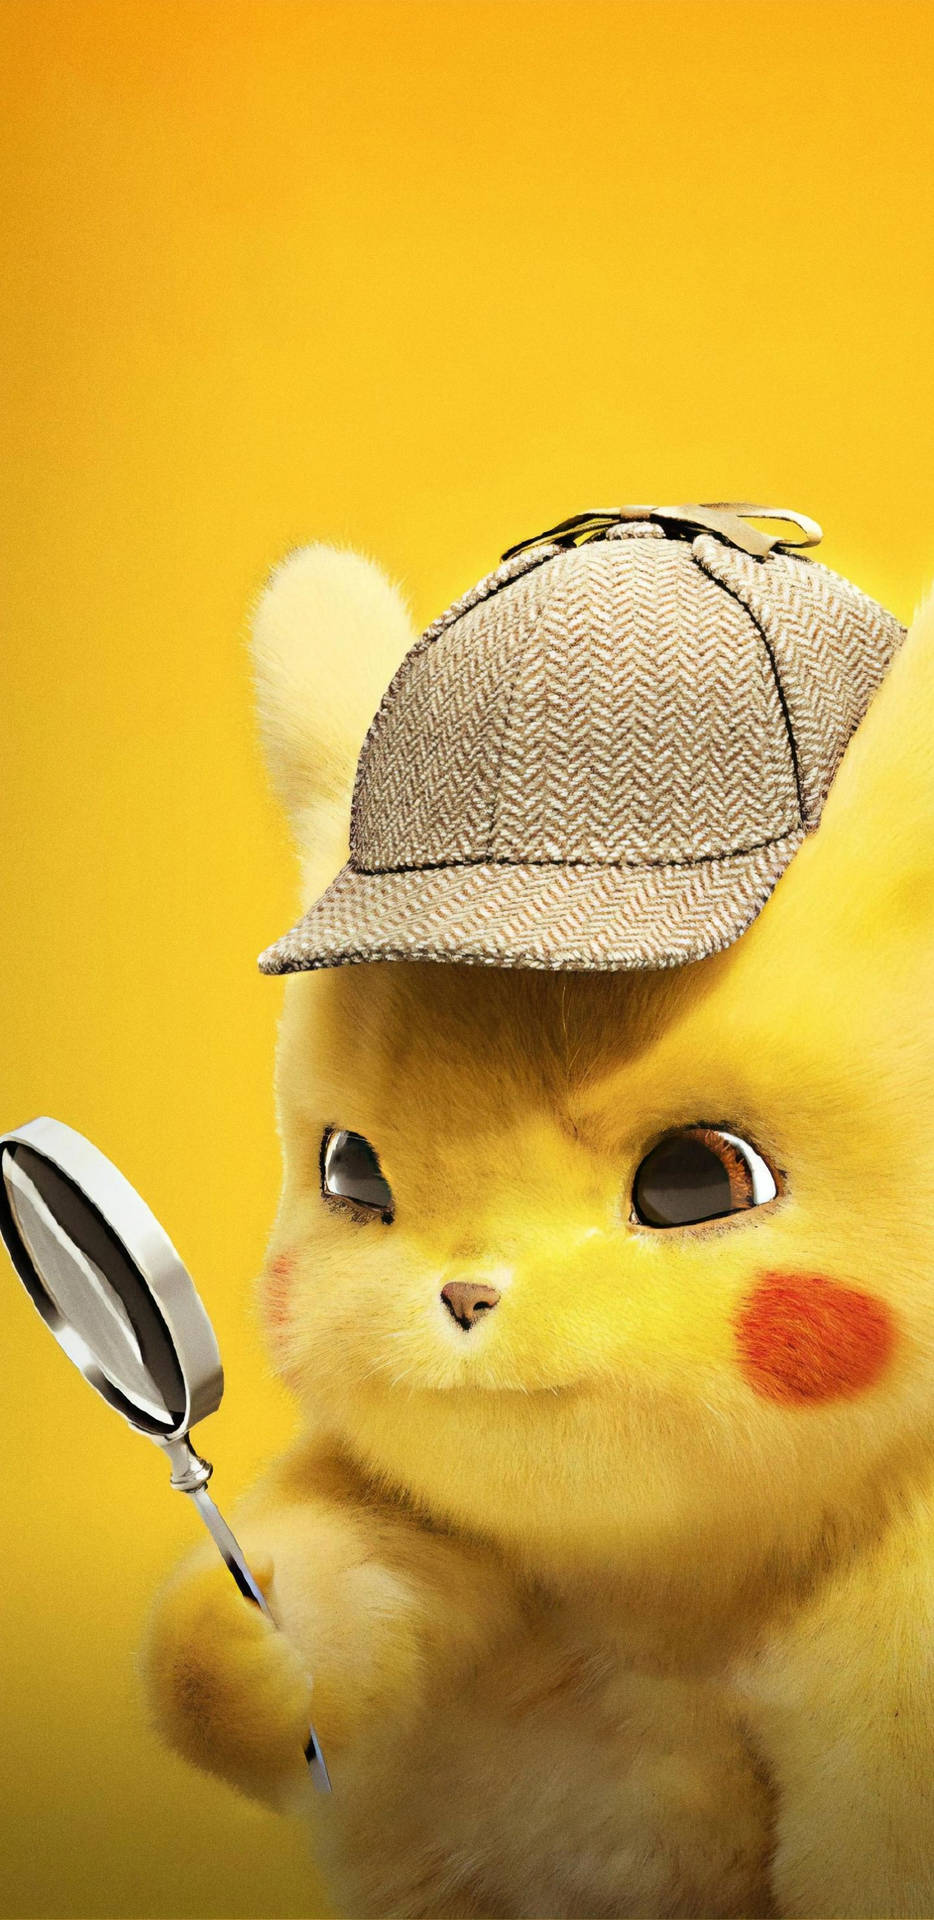 Detective Pikachu Portrait Photo Wallpaper